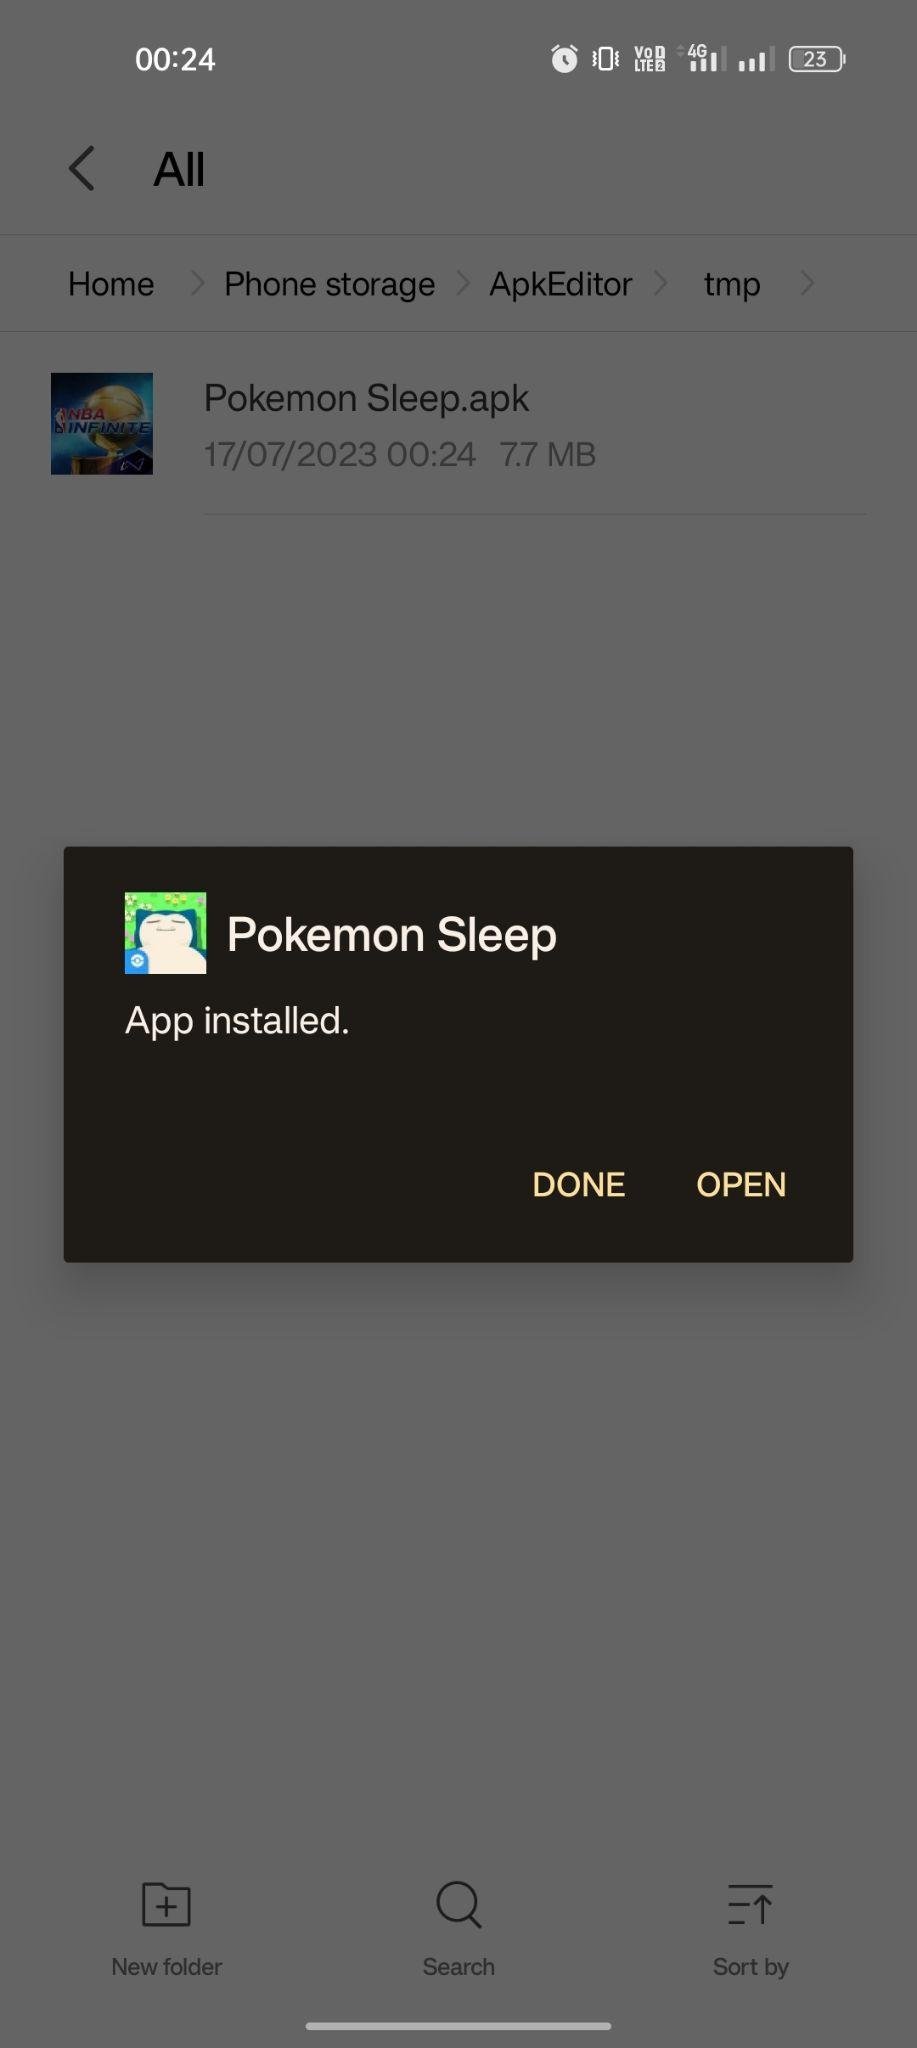 Pokemon Sleep apk installed